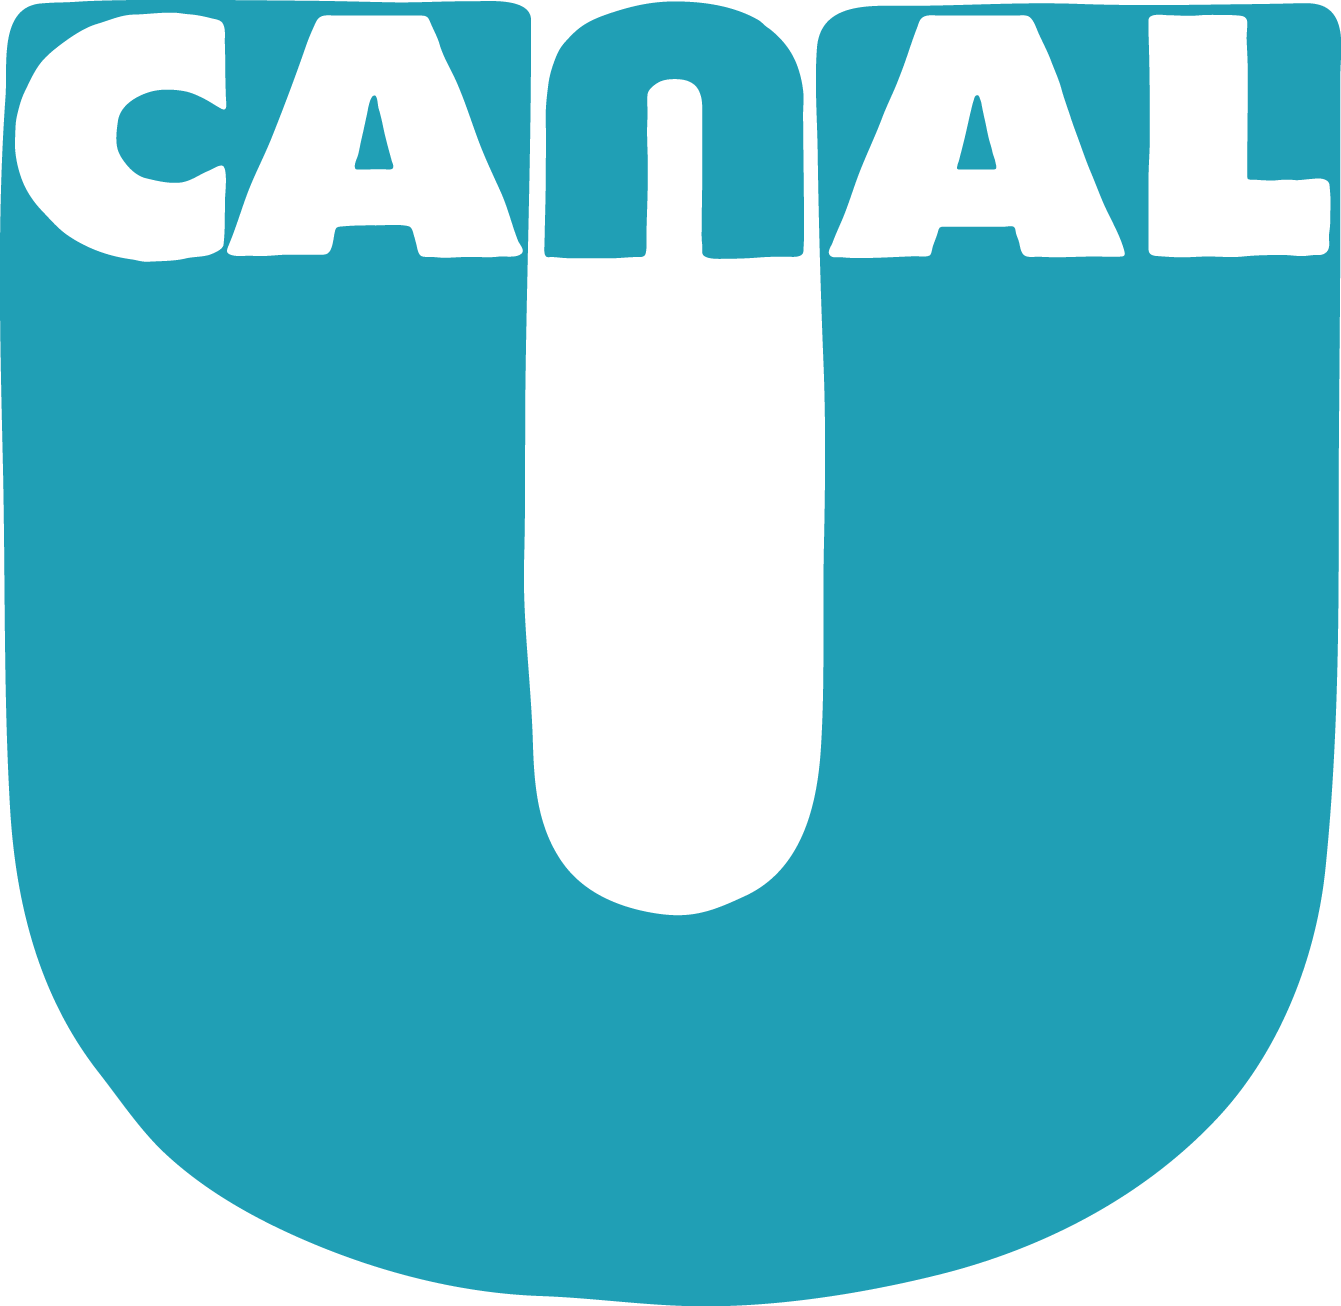 [bash] - Canal U Logo Png (1341x1306)